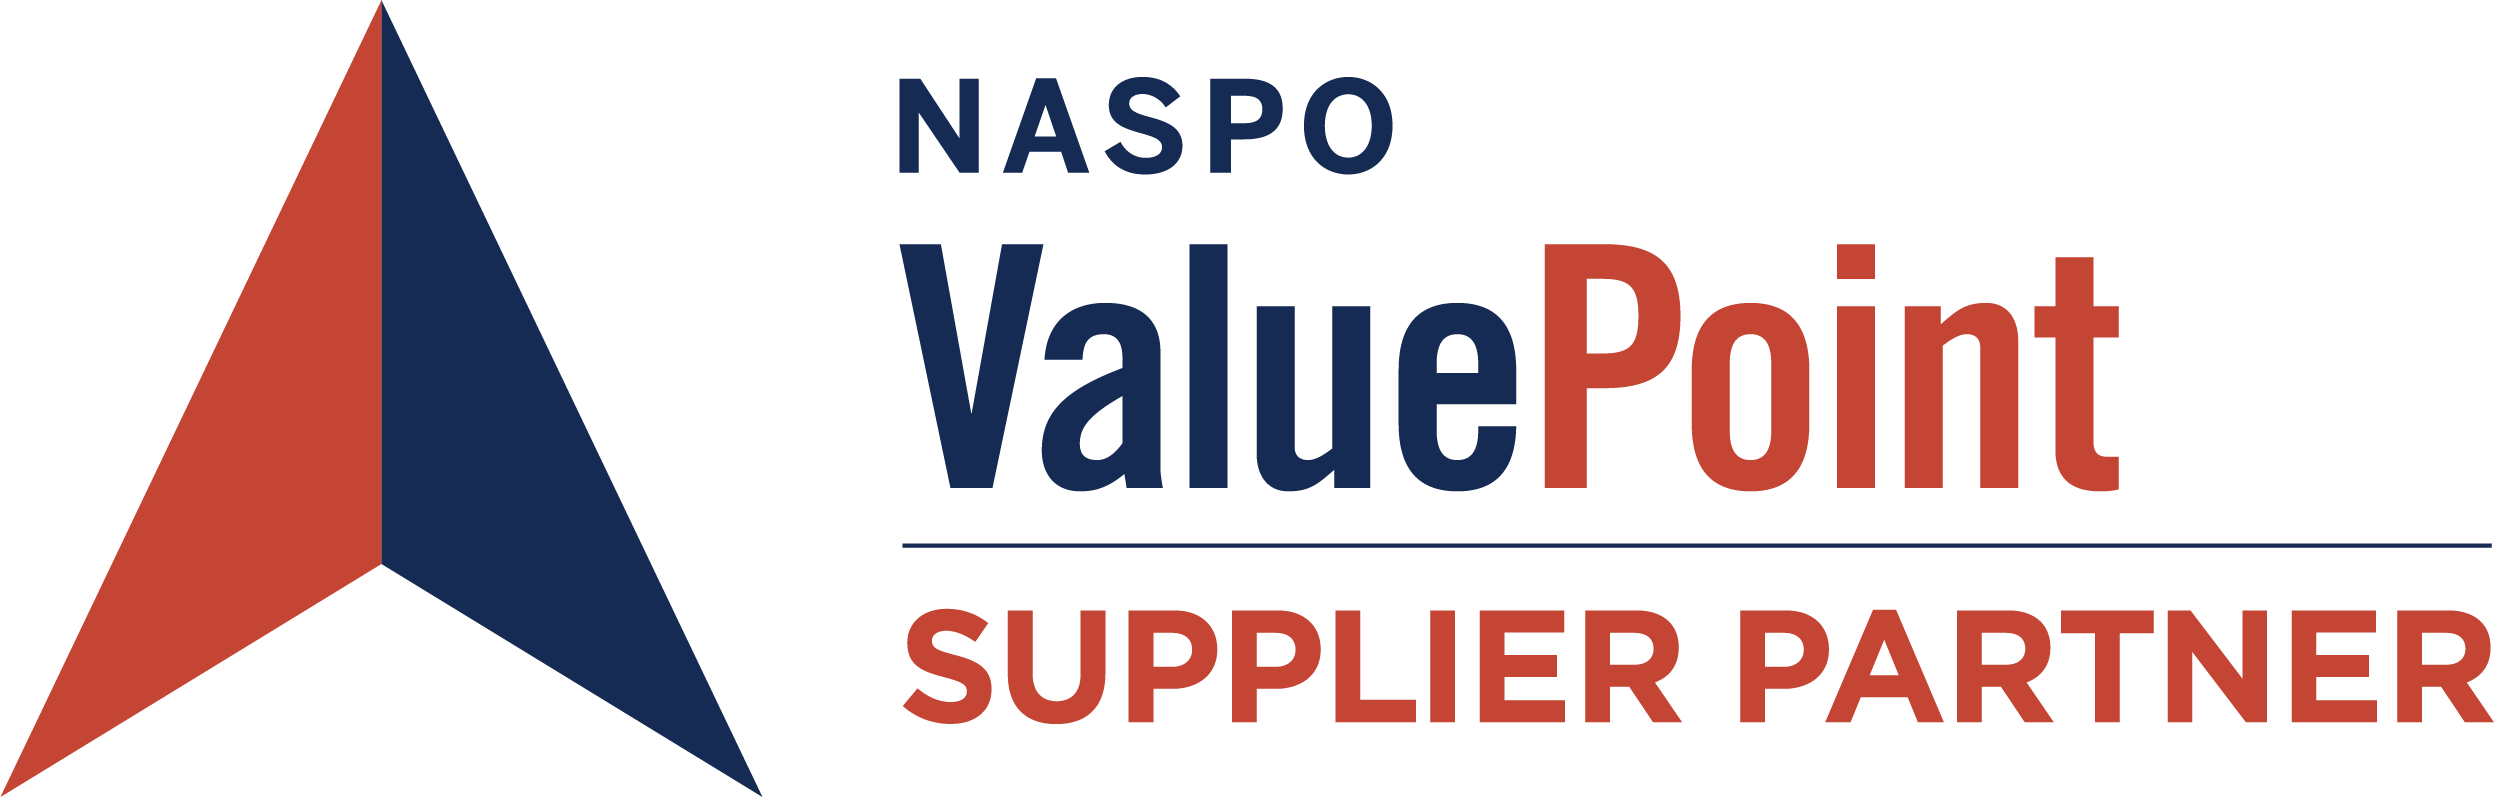 NASPO ValuePoint Logo